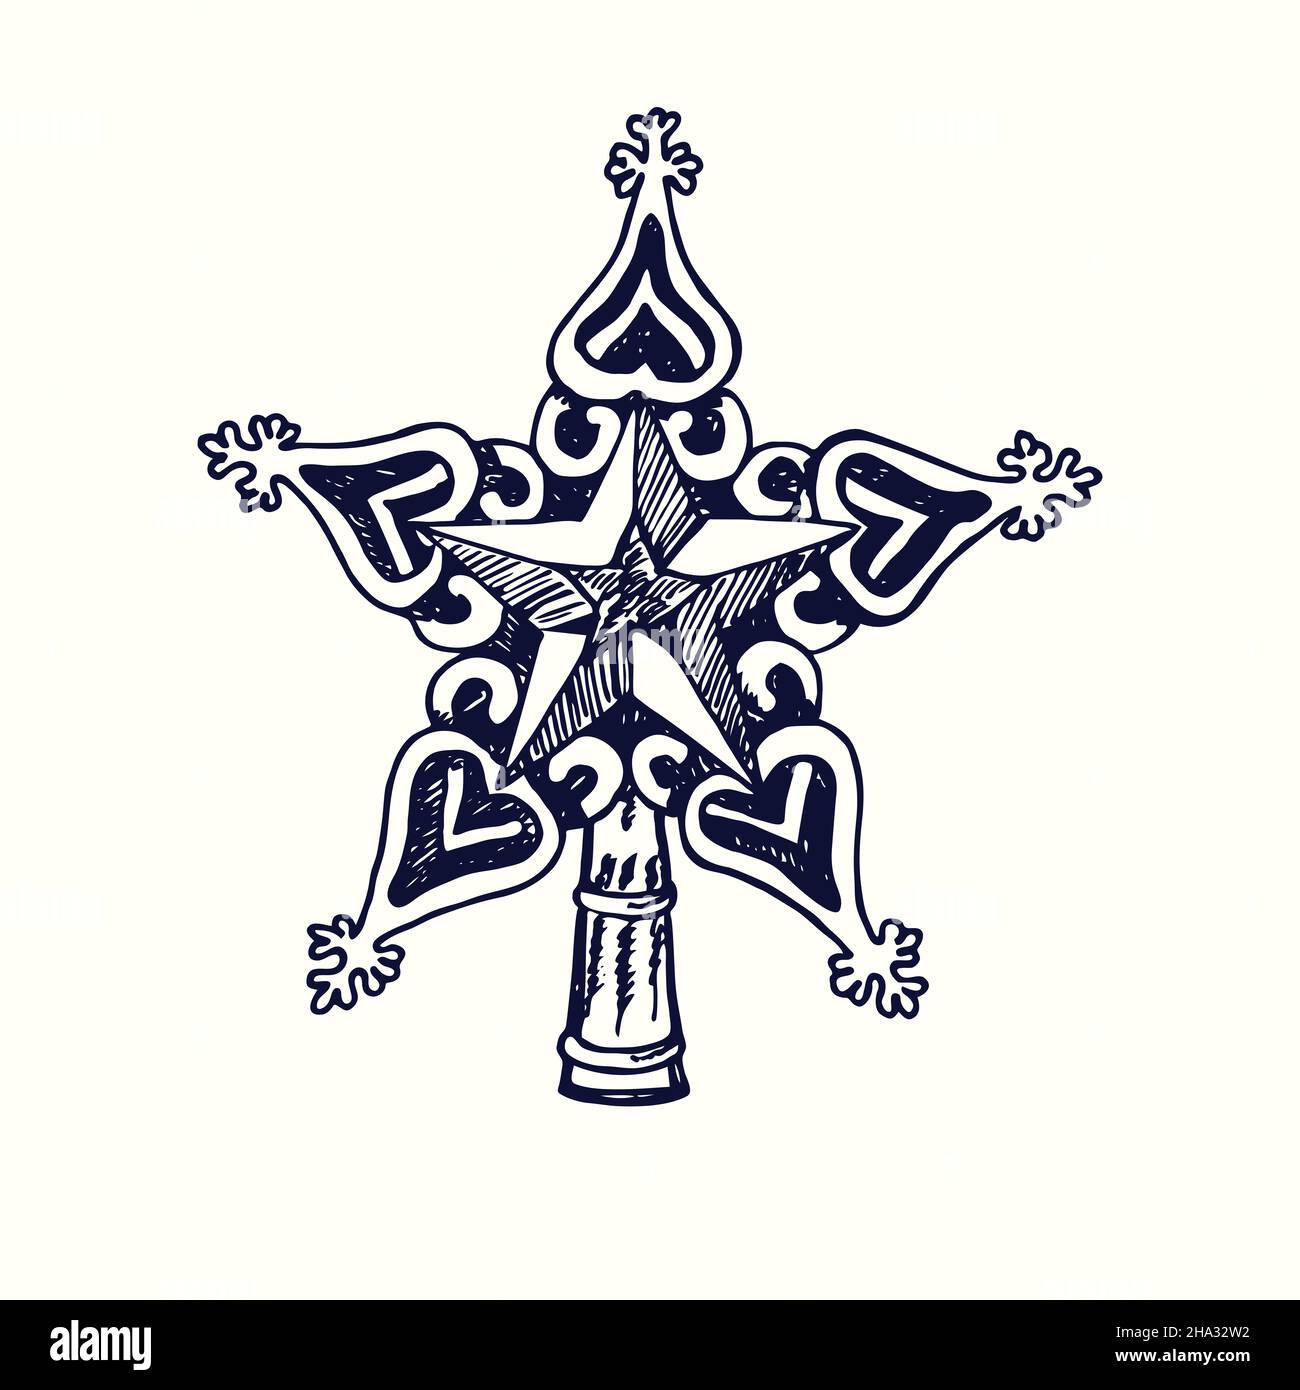 Topper a forma di stella per l'albero di Natale. Disegno in bianco e nero in legno. Foto Stock